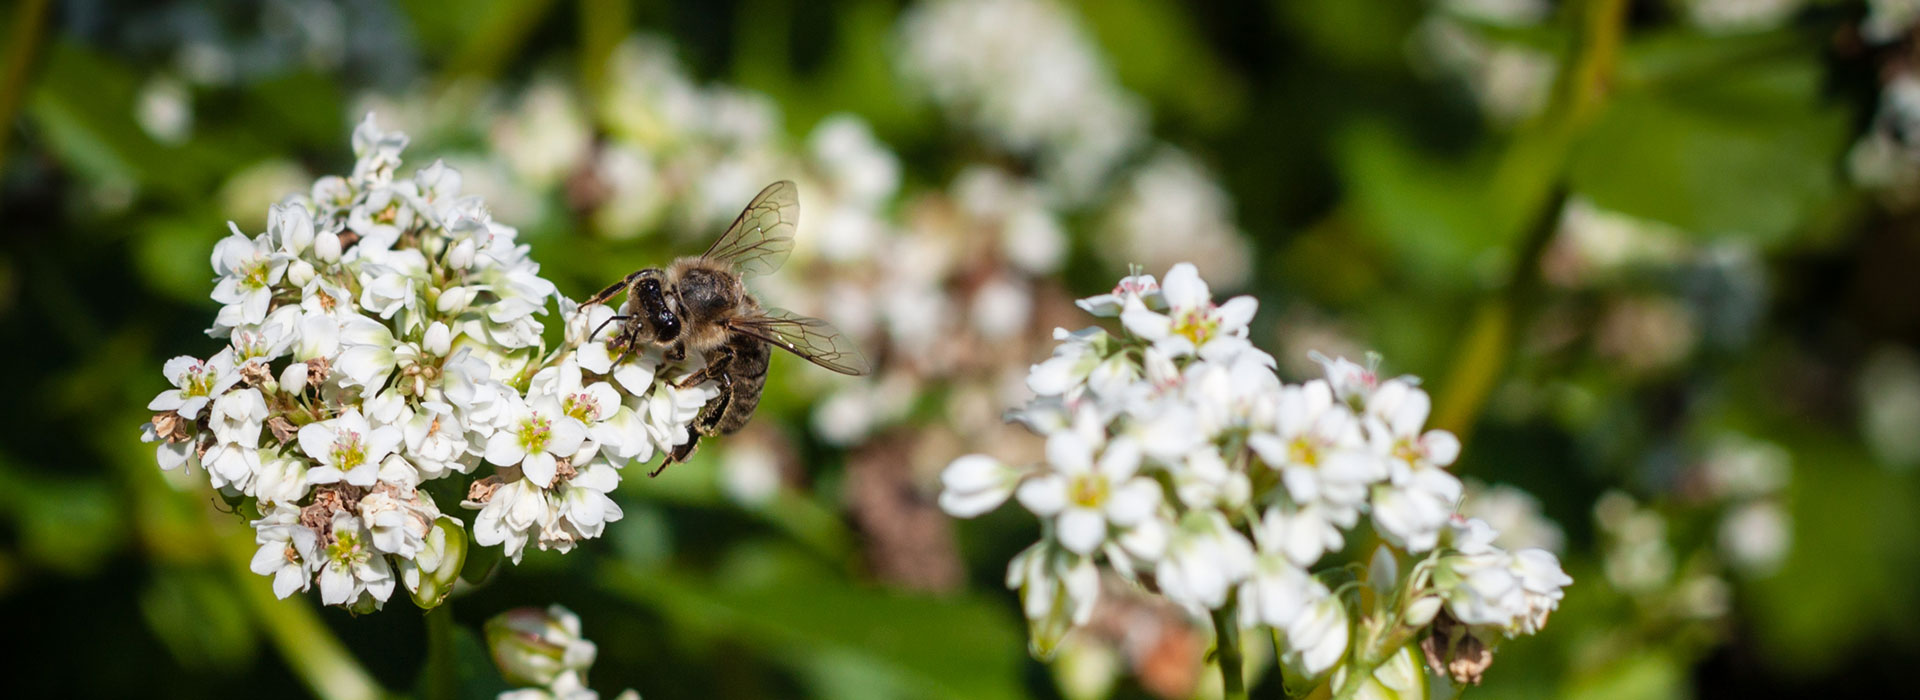 Biene sammelt Nahrung auf Buchweizenblüte